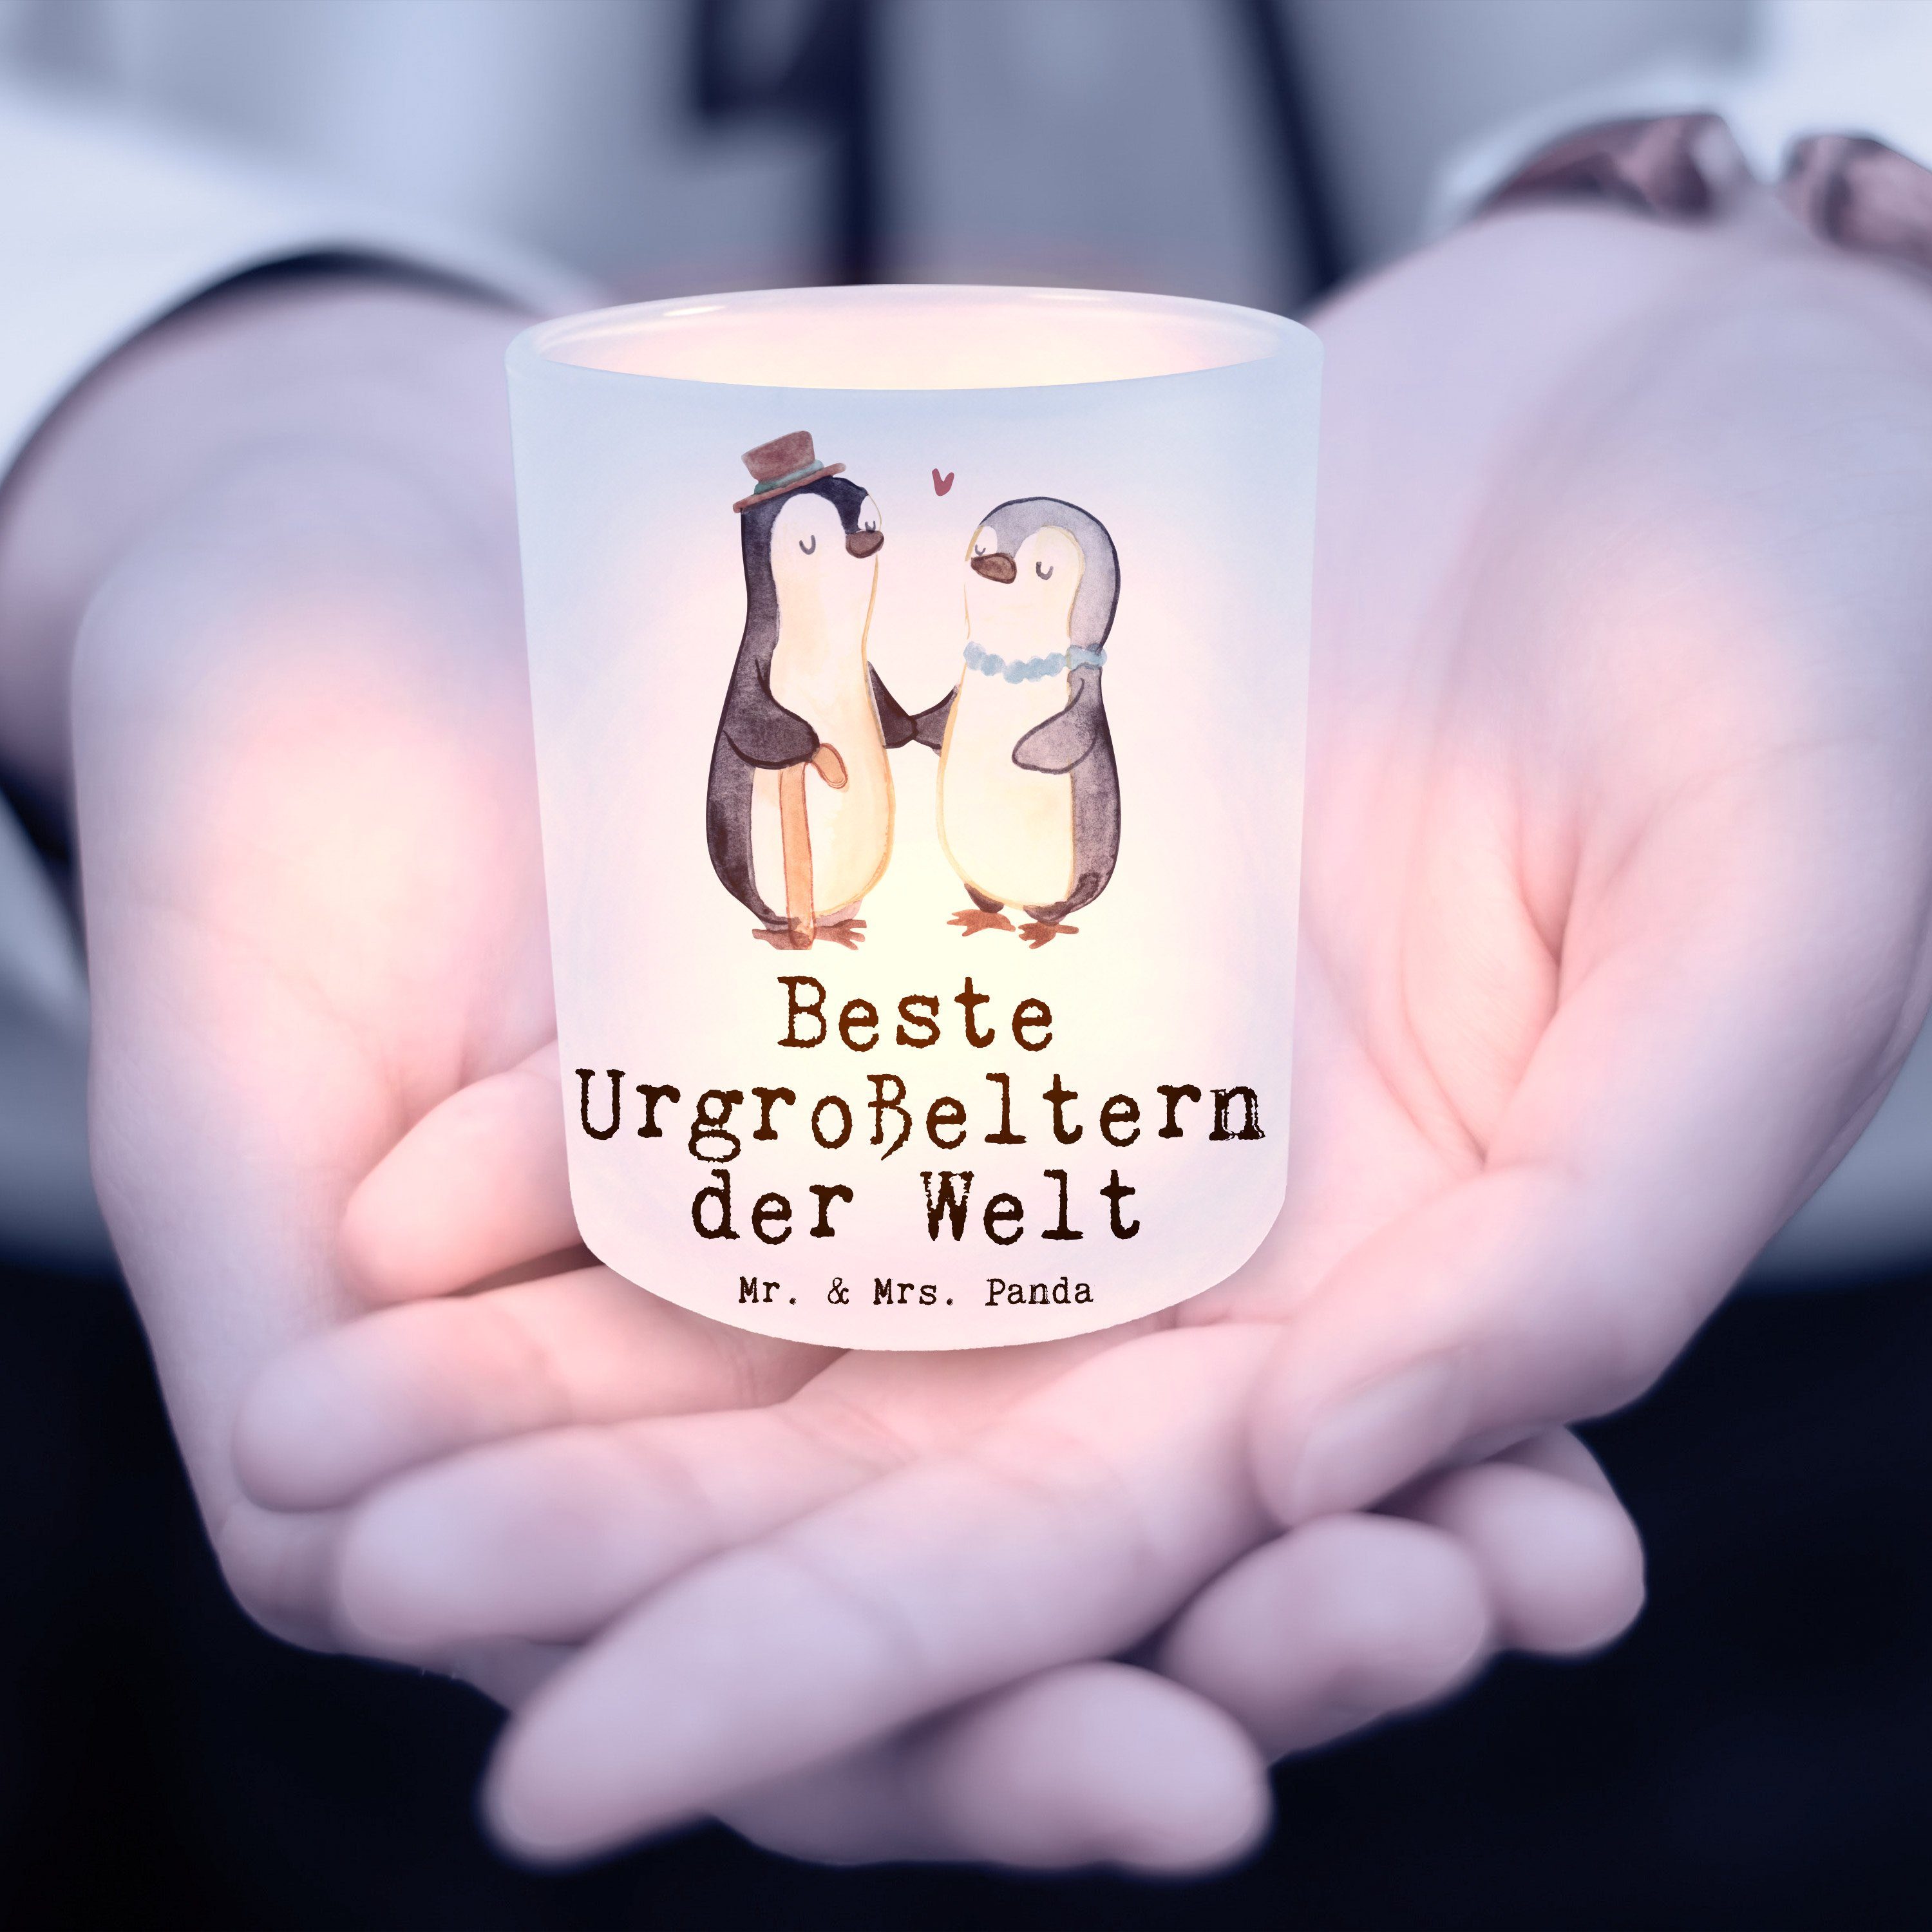 Mr. & Geschenk, Beste der Welt (1 Windlicht St) Pinguin Urgroßeltern Mitbrin - Transparent Panda - Mrs